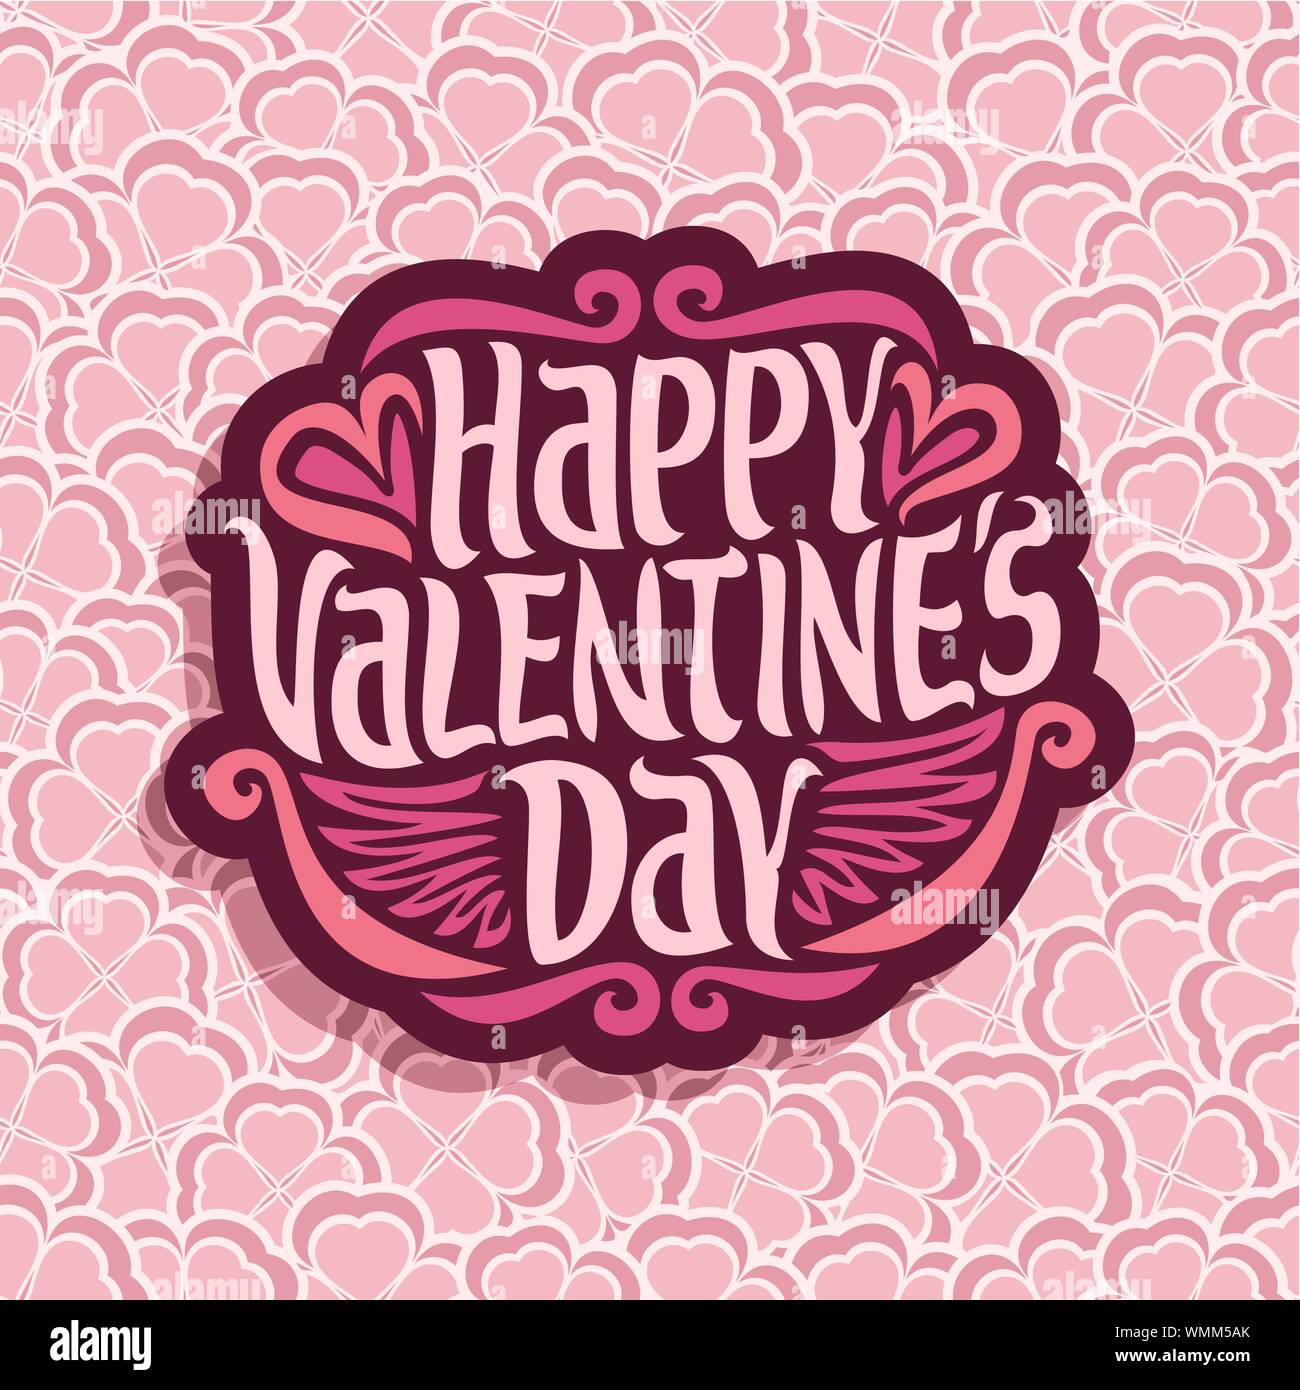 Vektor abstrakte Logo für Happy Valentine's Day auf floral background. Stock Vektor